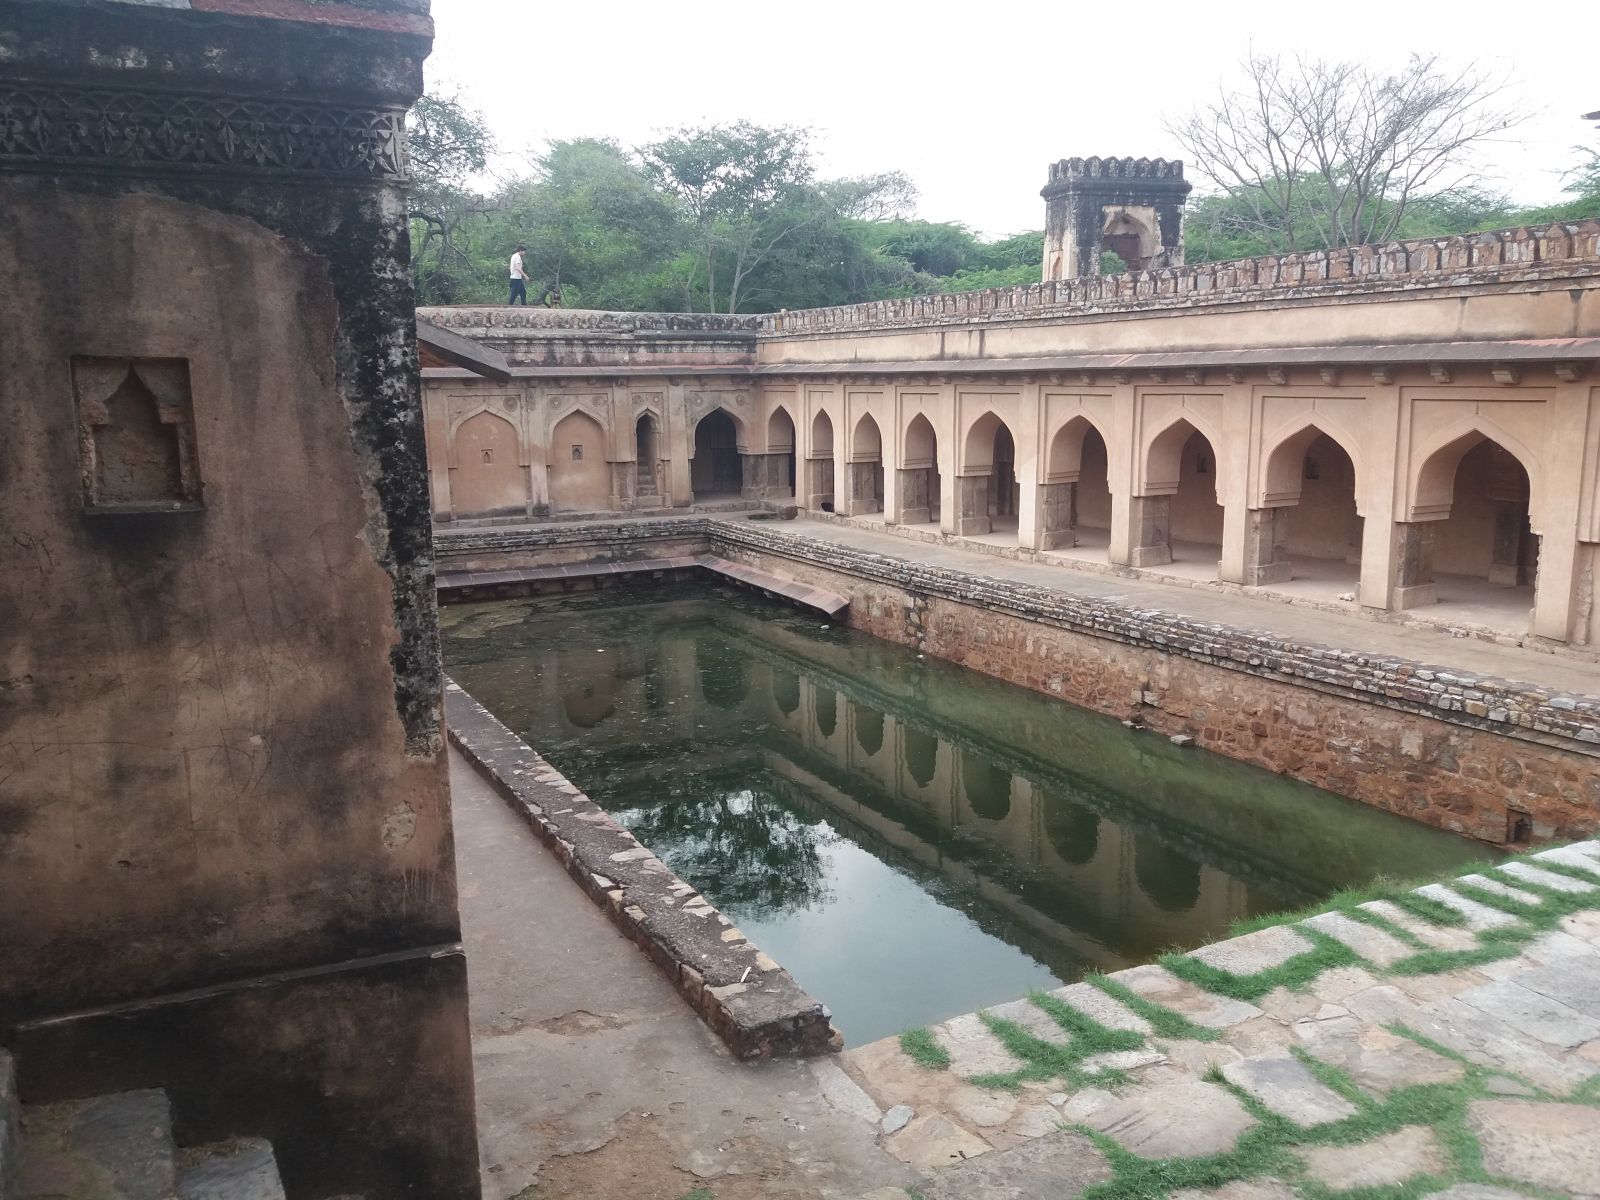 Középkori víztározó Delhiben. A főváros Mehrauli negyedében található, körülbelül 50 hektáros régészeti park, melynek terültén közel 100 műemlék található, Delhi egyik leghangulatosabb idegenforgalmi látványossága lehetne. Persze, ehhez kicsit rendbe kellene szedni, többek között el kellene takarítani belőle pár mázsa szemetet. A víztározó érdekes és romantikus hangulatú építmény, nagy kár, hogy a medencében zöld színű undormánylé poshad, melynek tetején pillepalackok úsznak egyéb szemét társaságában.